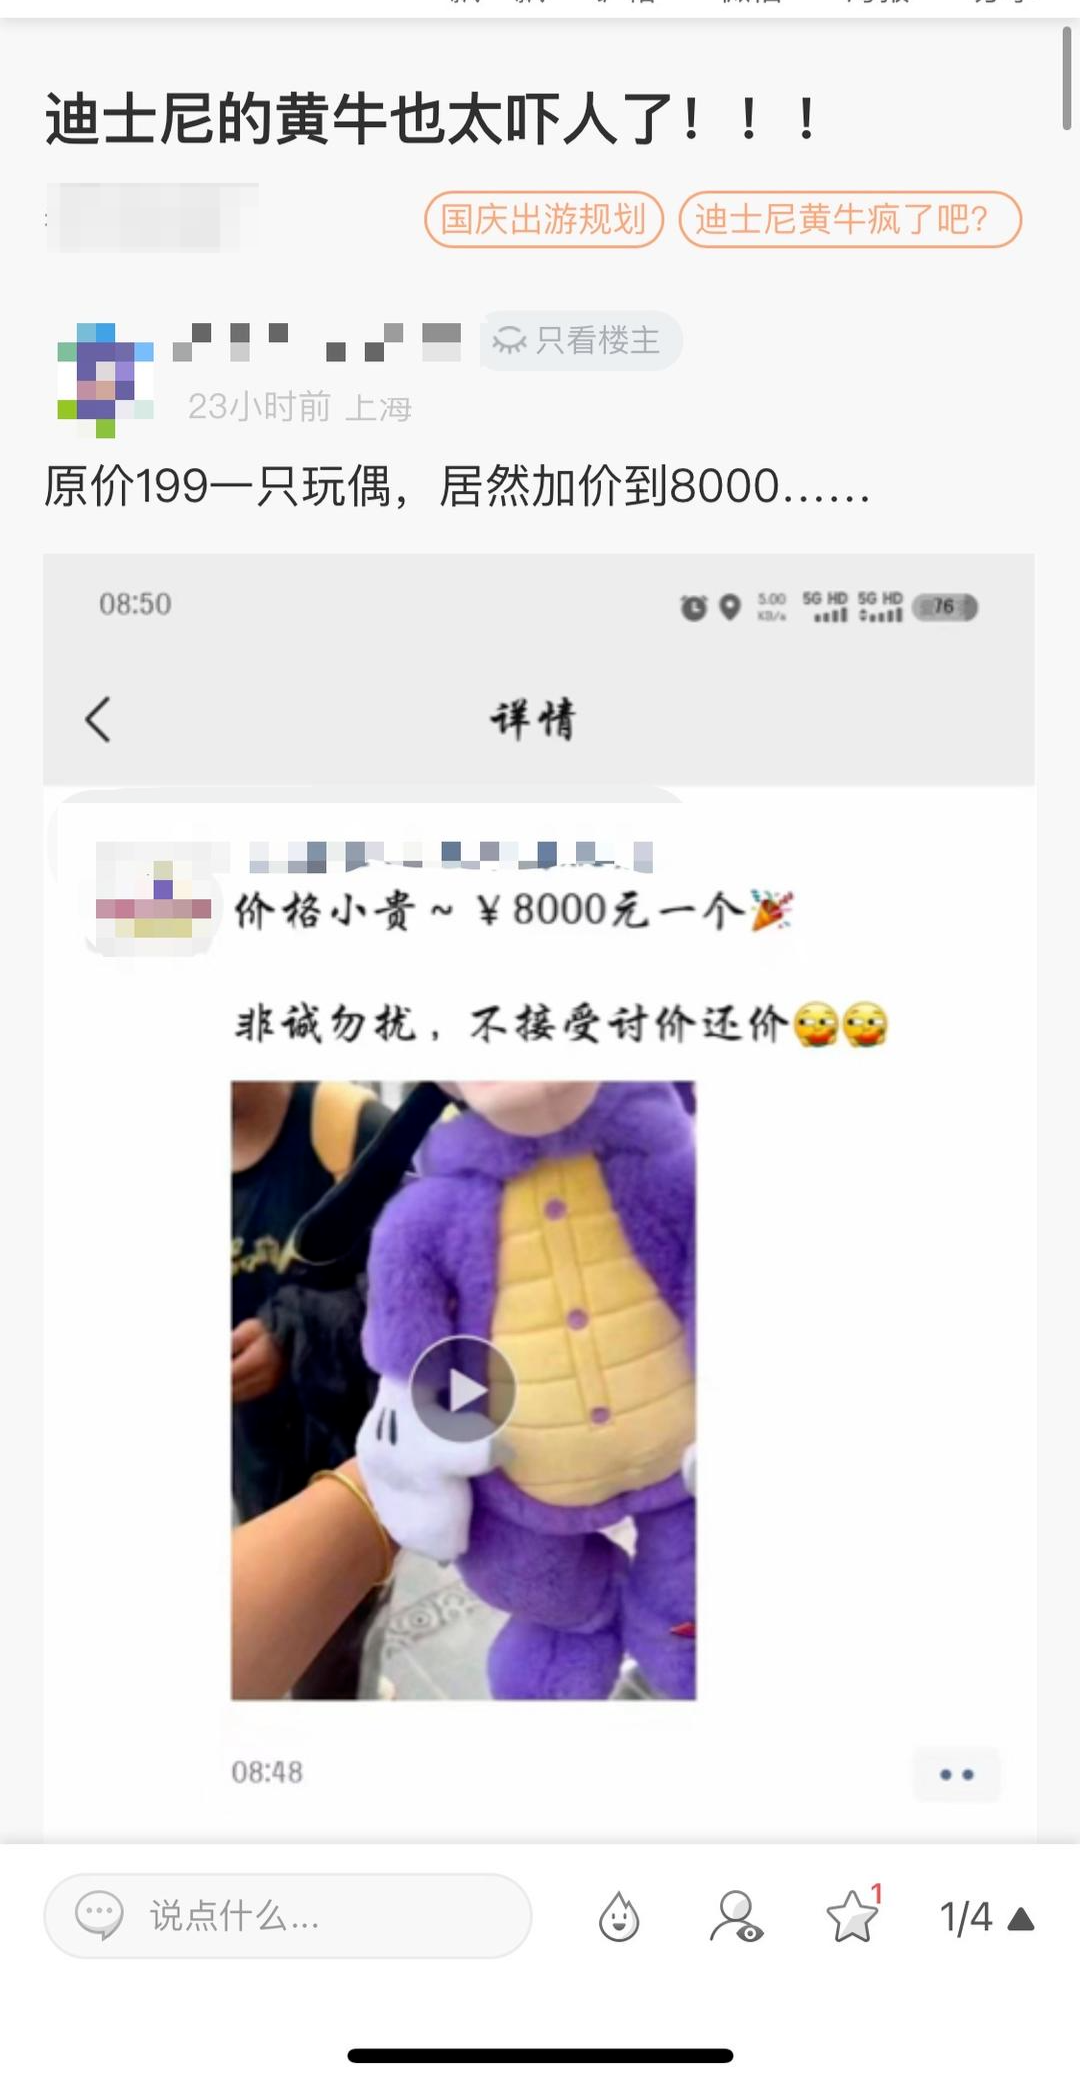 ▲网友爆料有人8000元出售“紫龙高飞”毛绒玩具